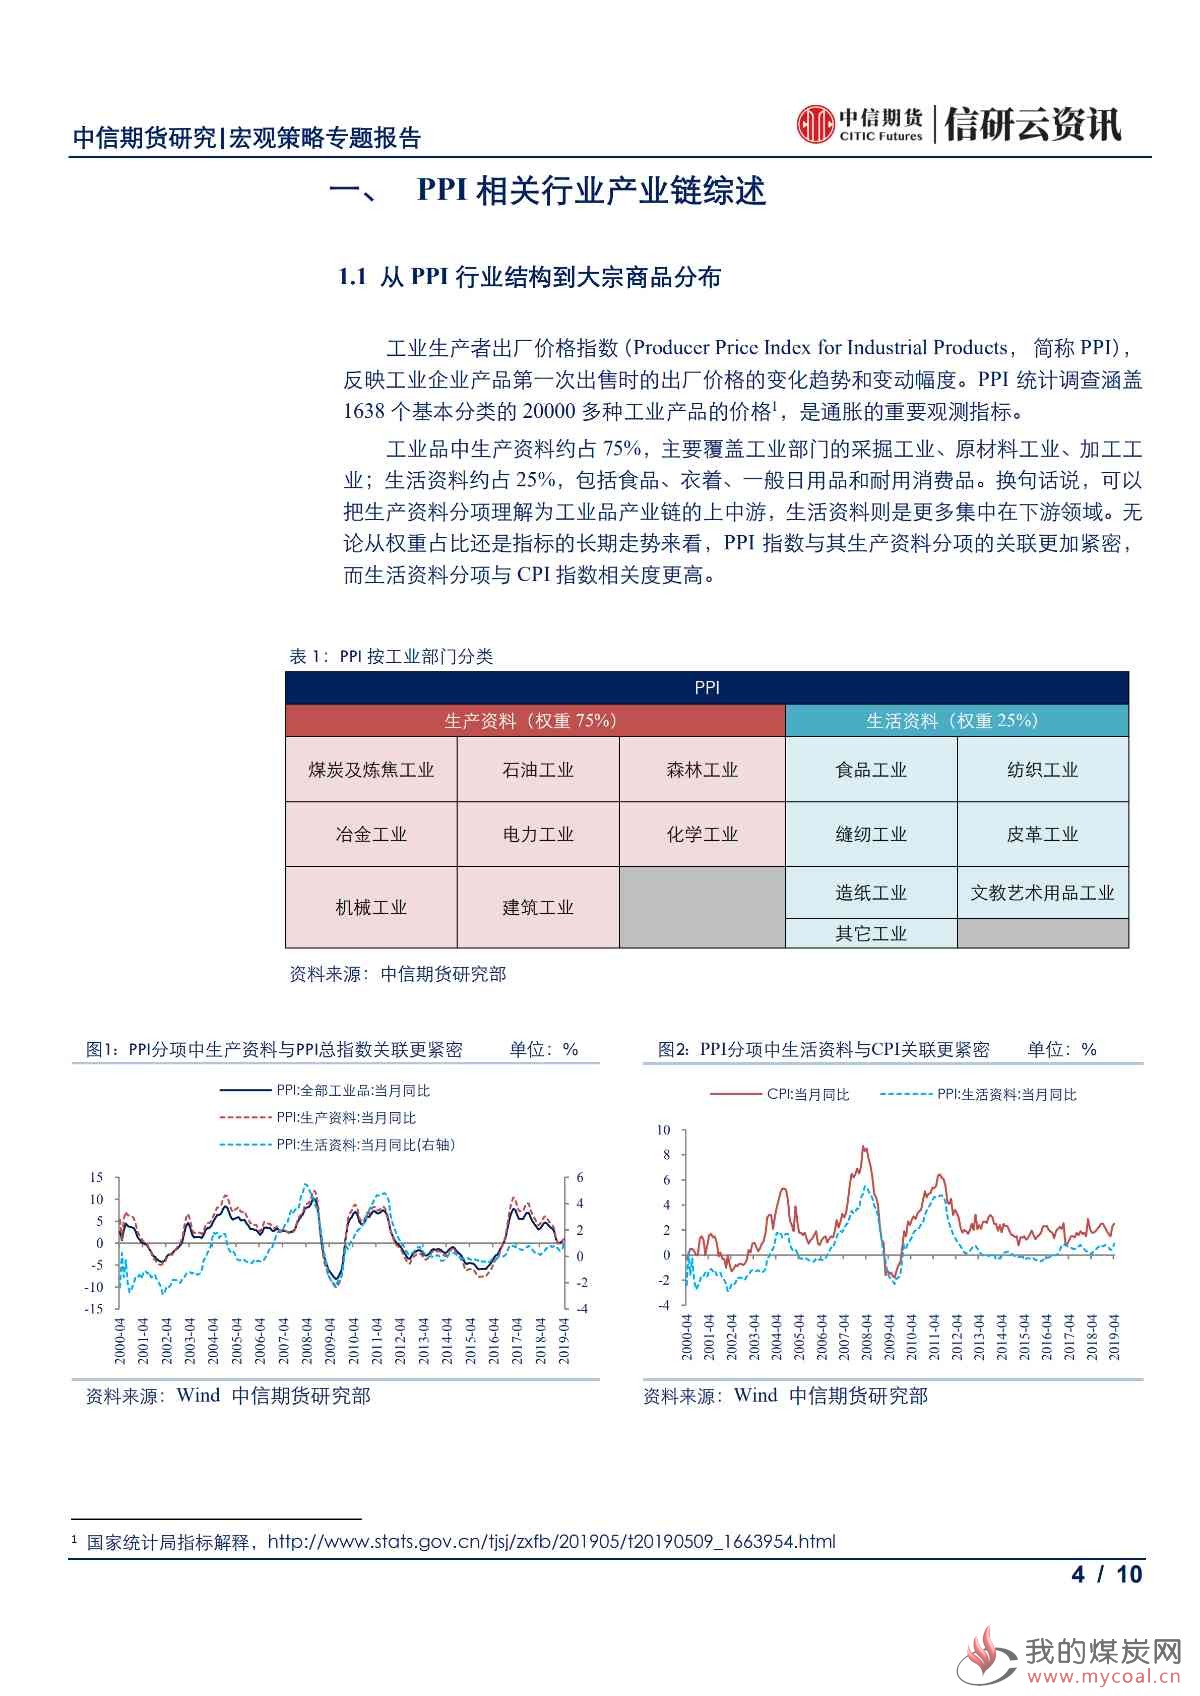 【中信期货宏观策略】PPI周期下的商品投资策略——专题报告20190517_03